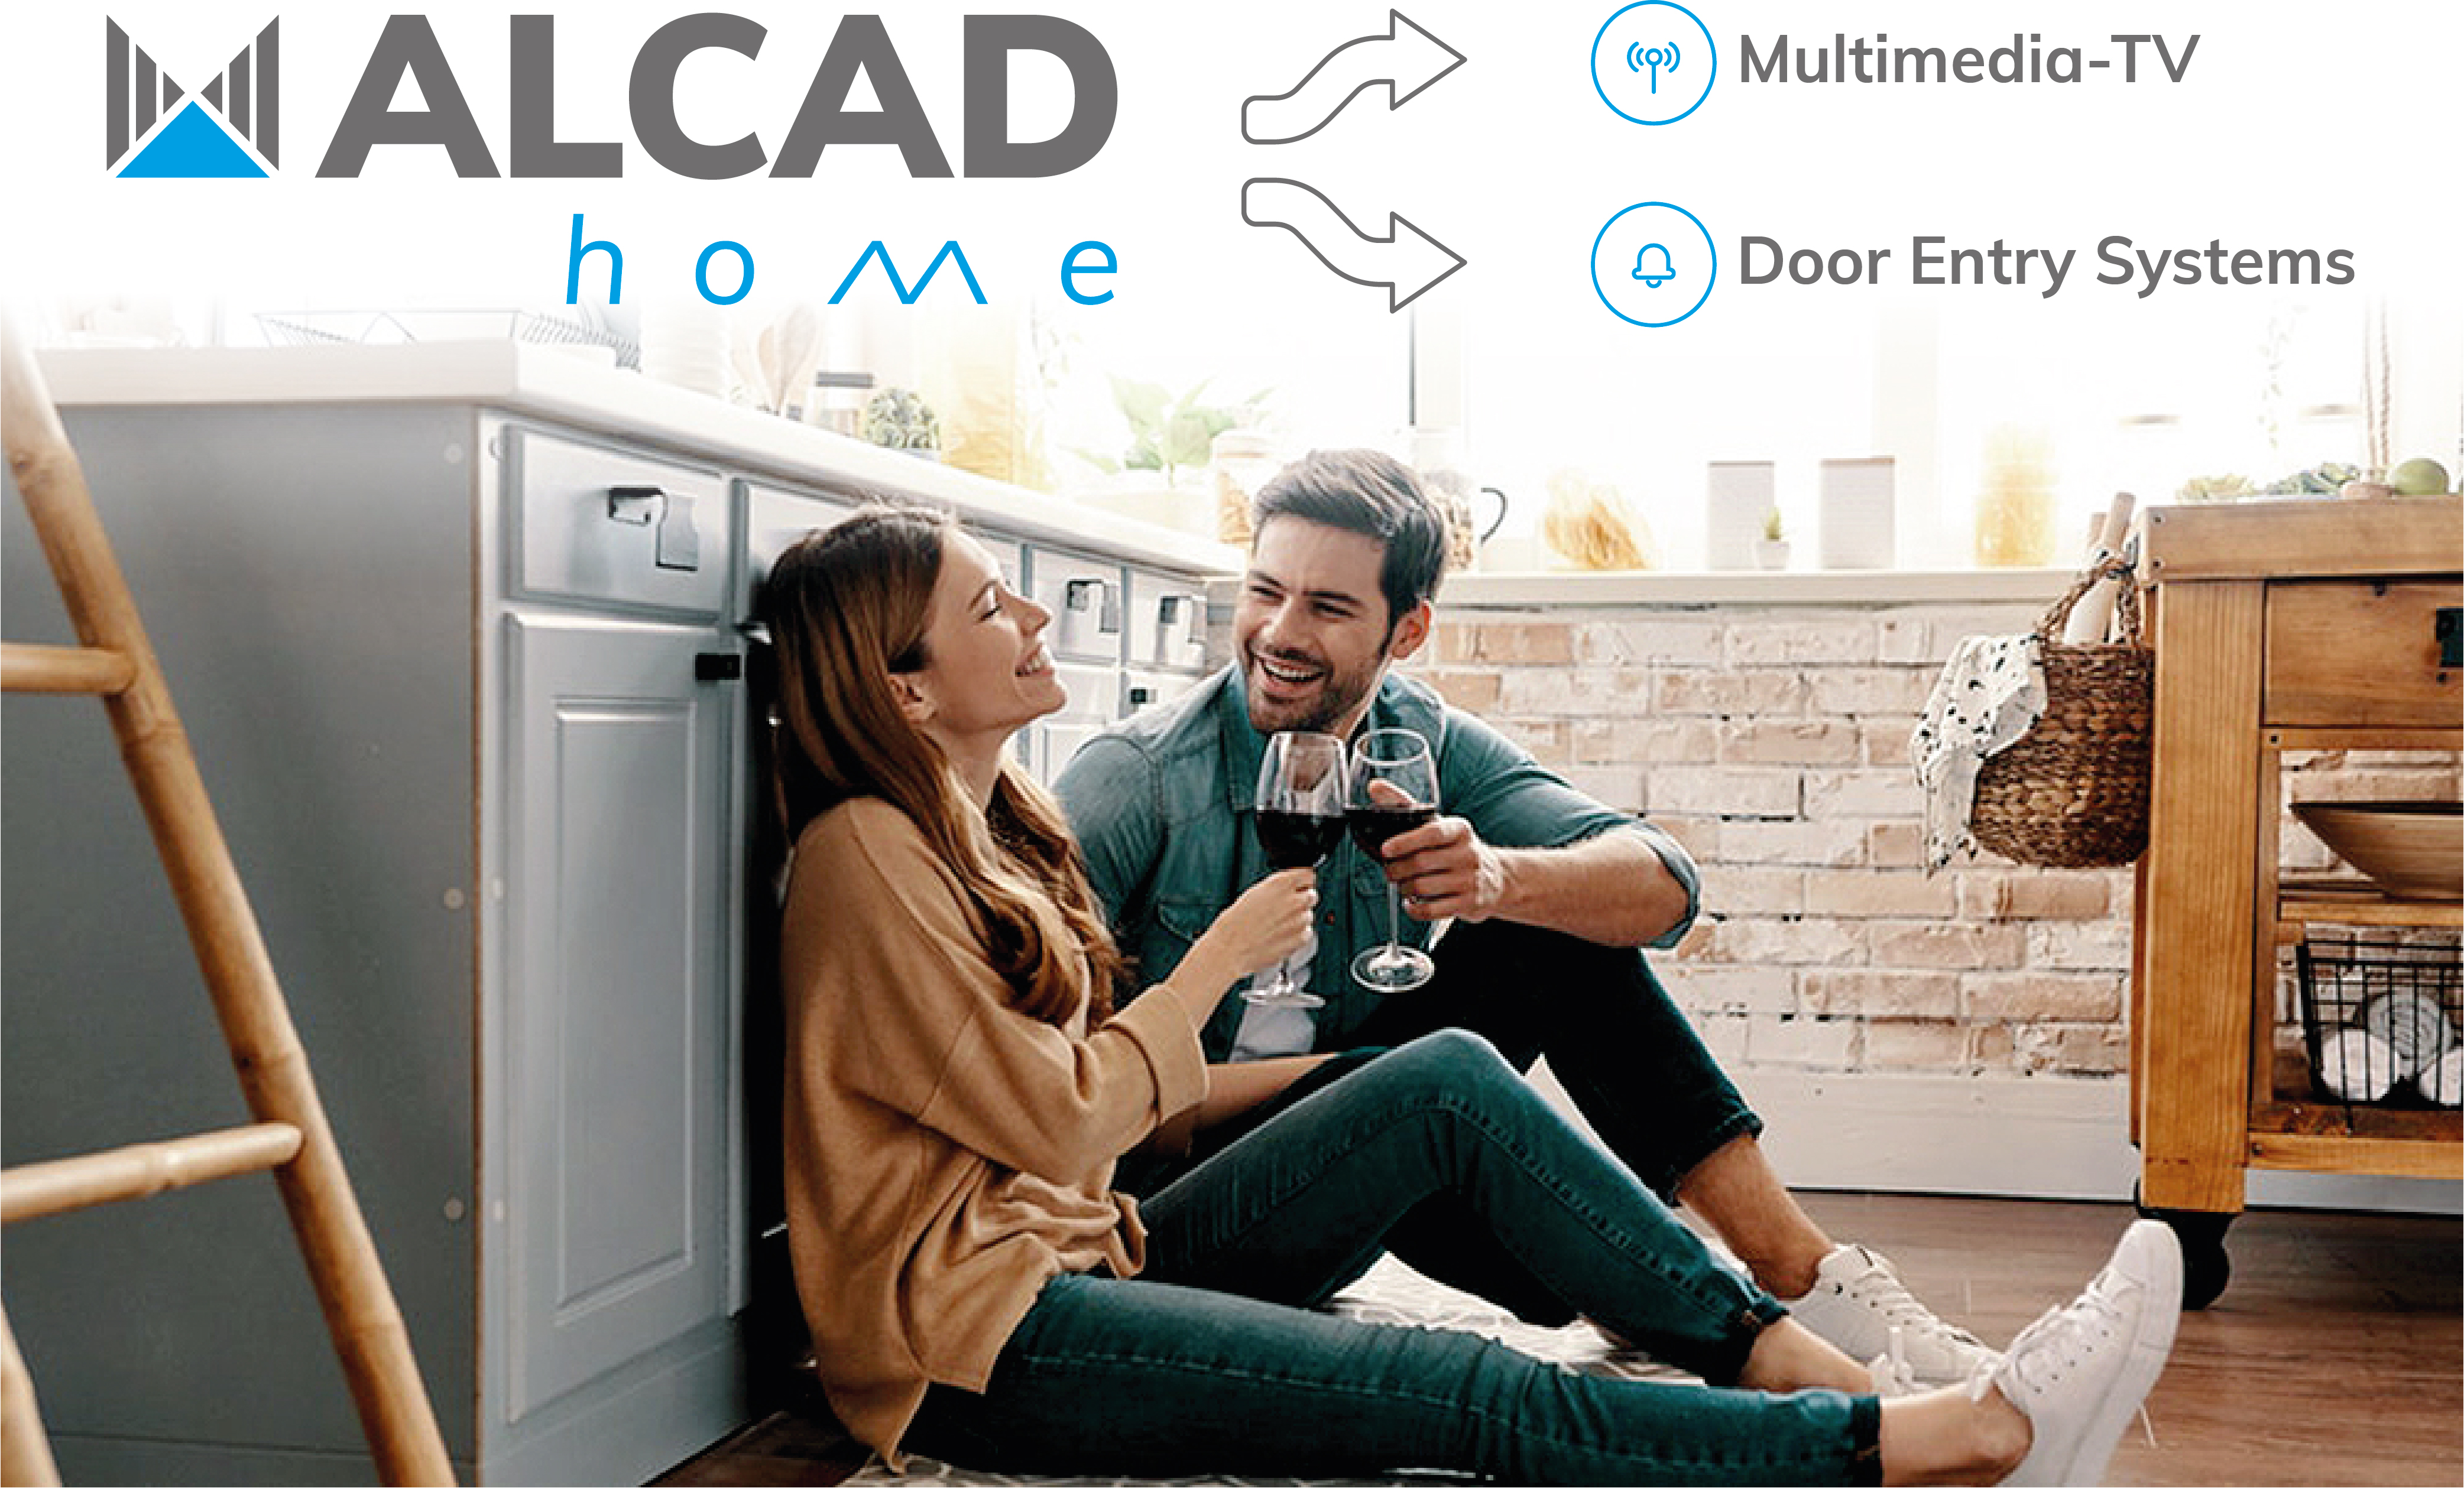 ALCAD Home: soluciones de entretenimiento, seguridad y telecomunicaciones en el ámbito del hogar y de la vivienda del futuro